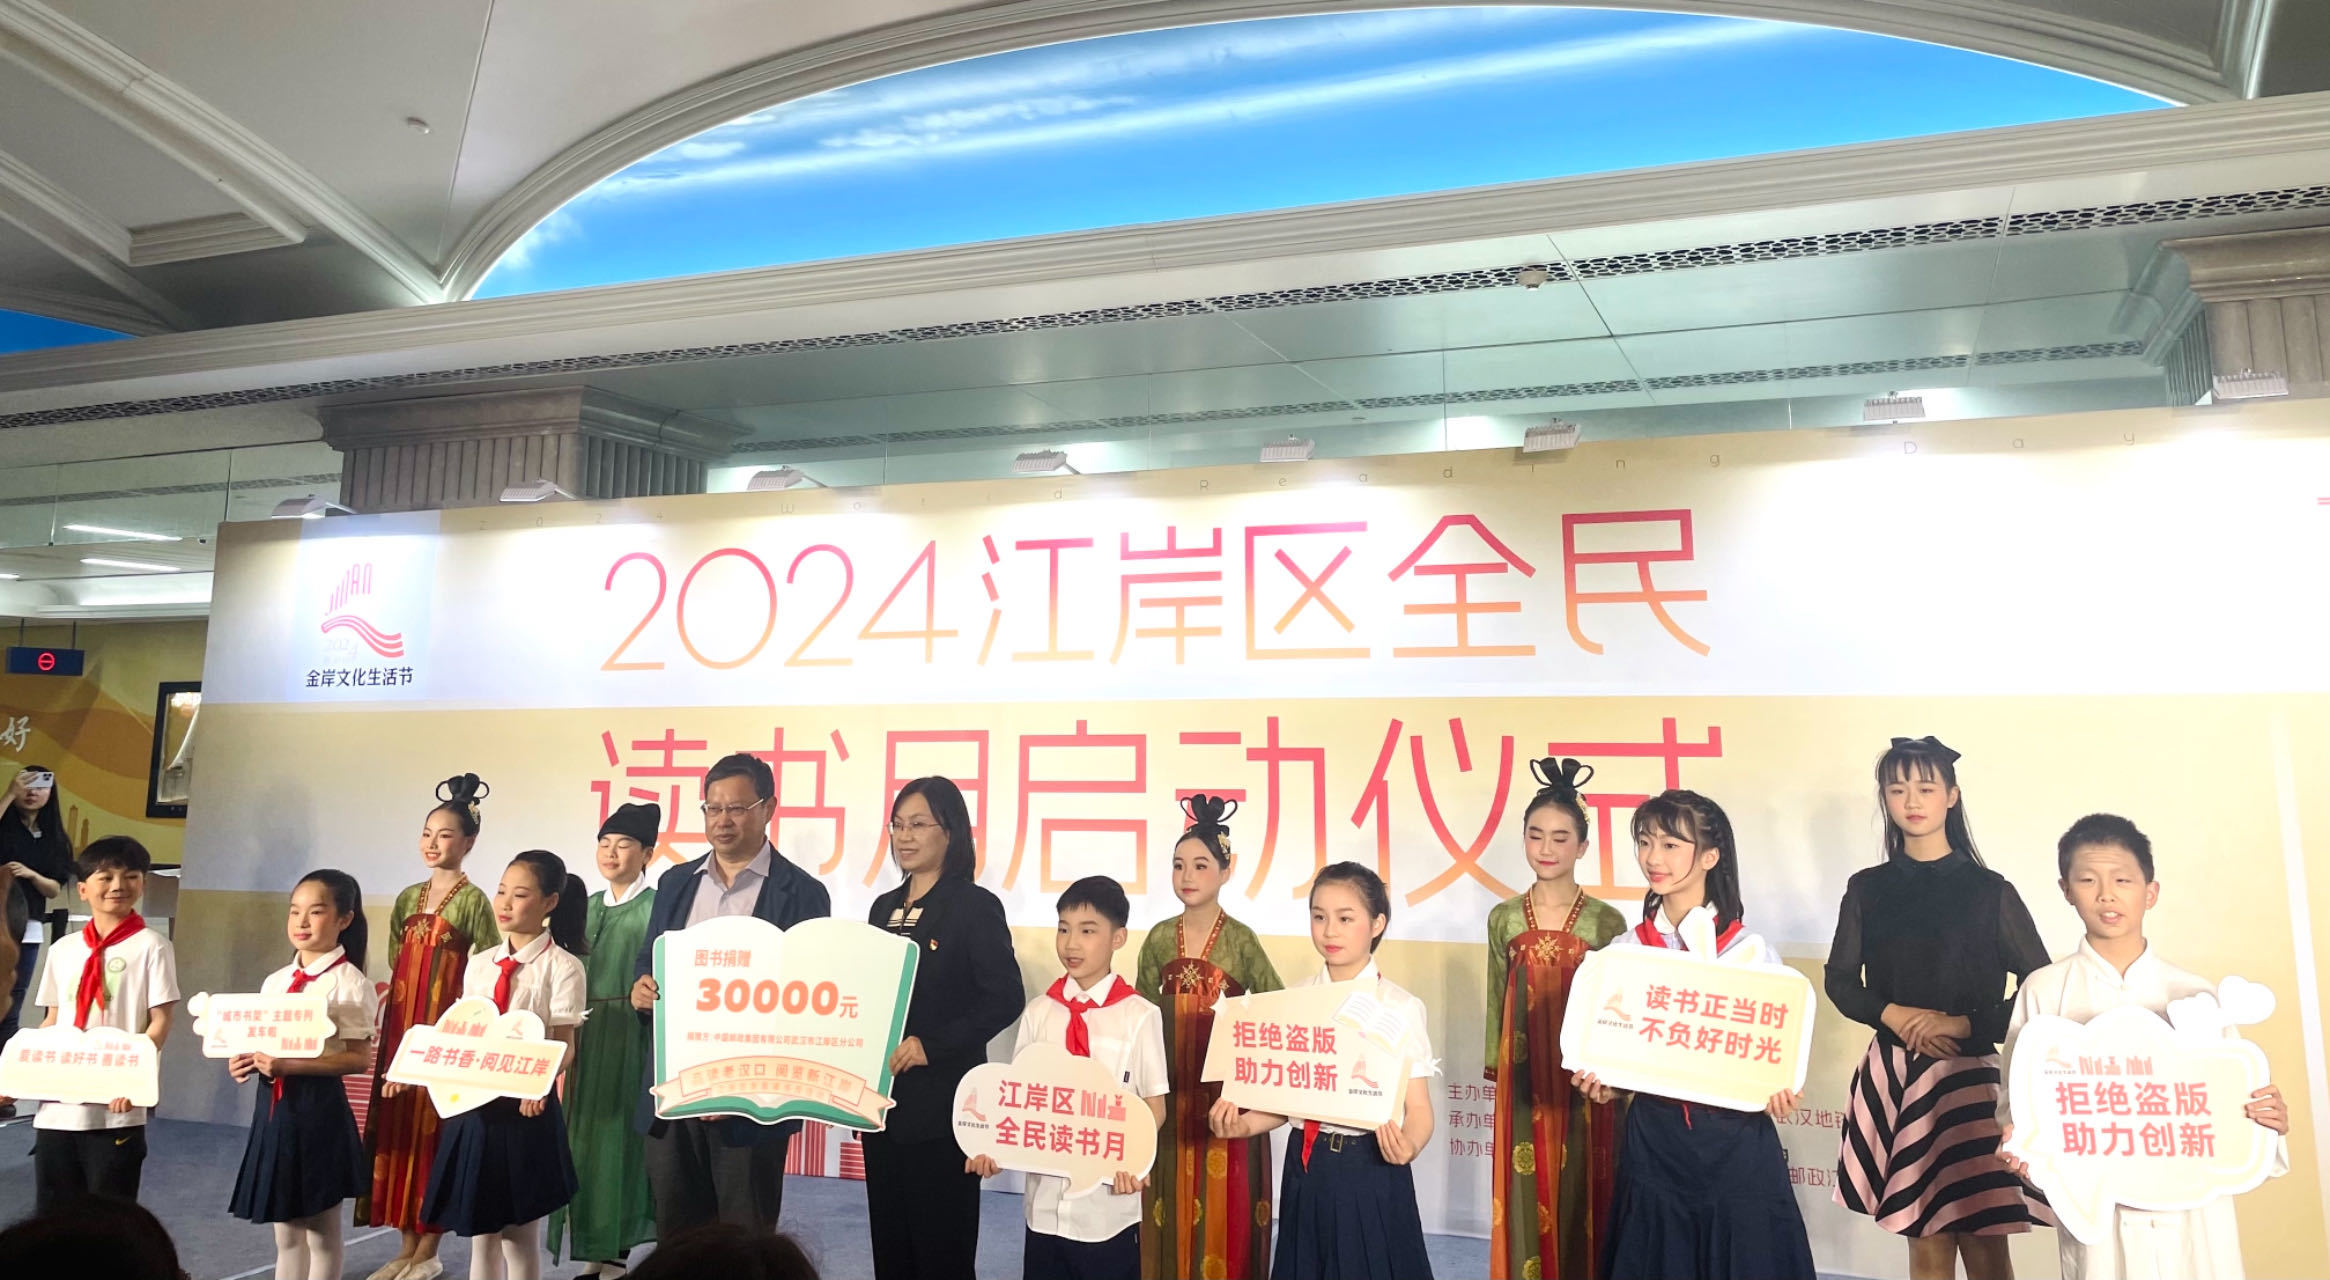 中国邮政江岸分公司与江岸区教育局共建学校图书馆捐书仪式